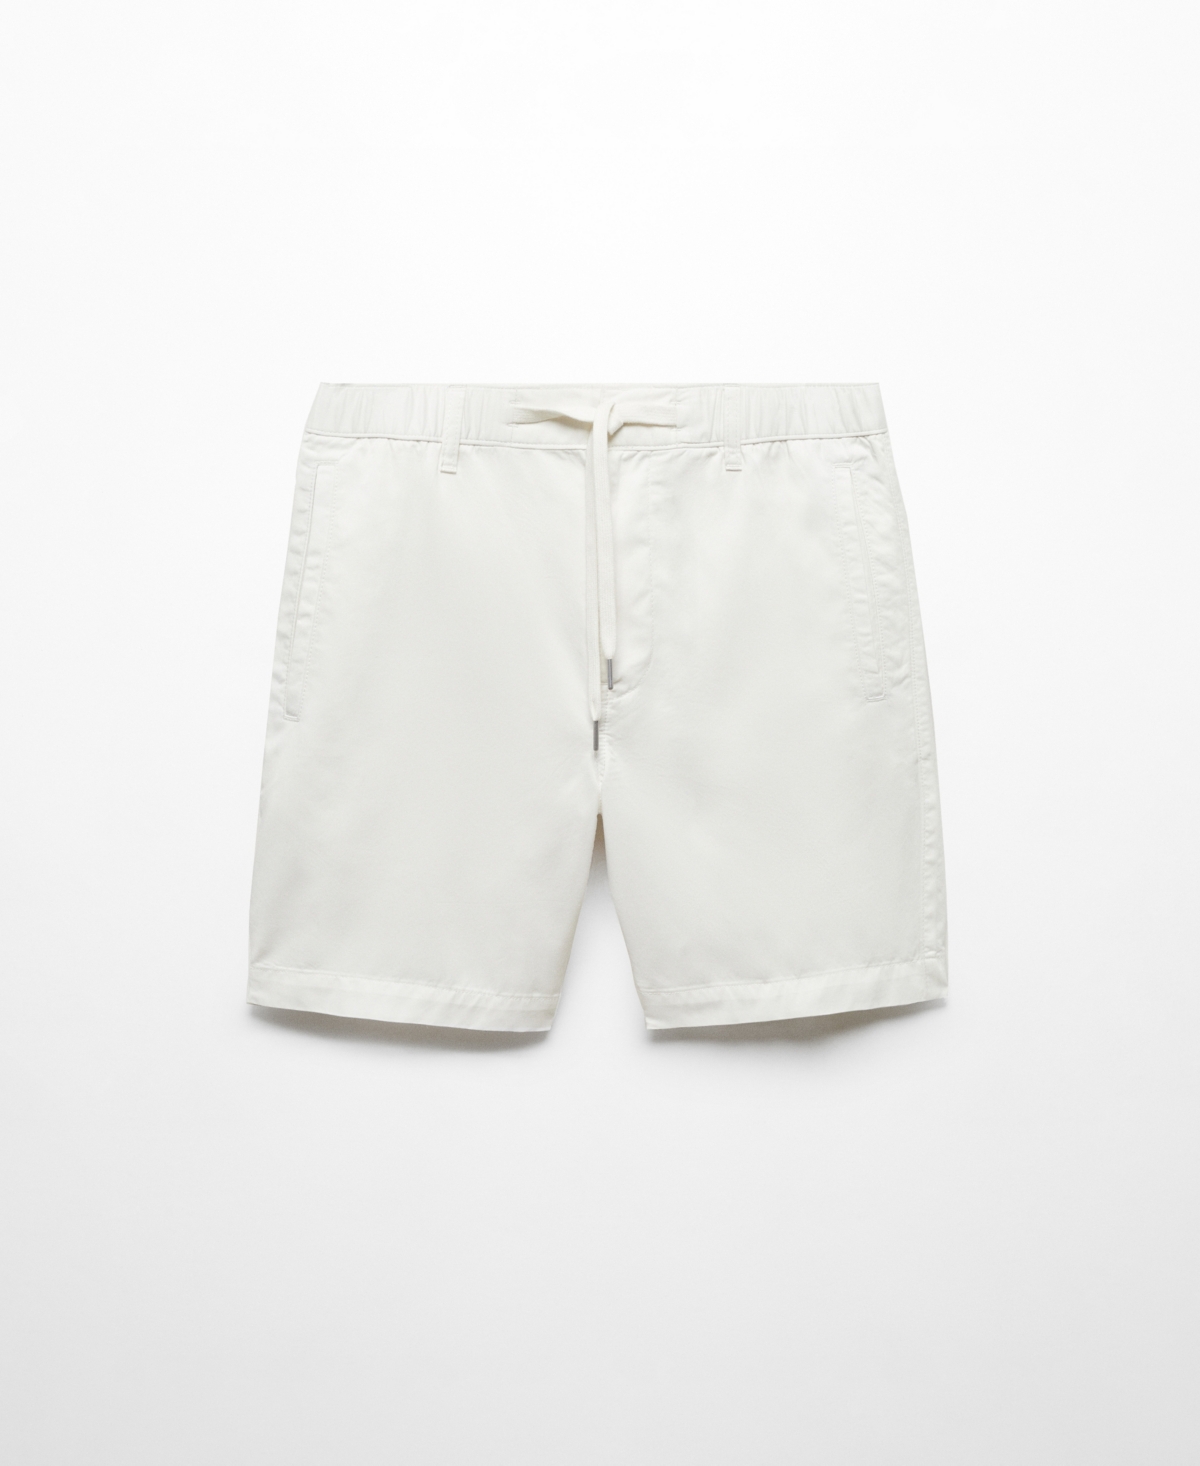 Mango Men's 100% Cotton Drawstring Bermuda Shorts In White